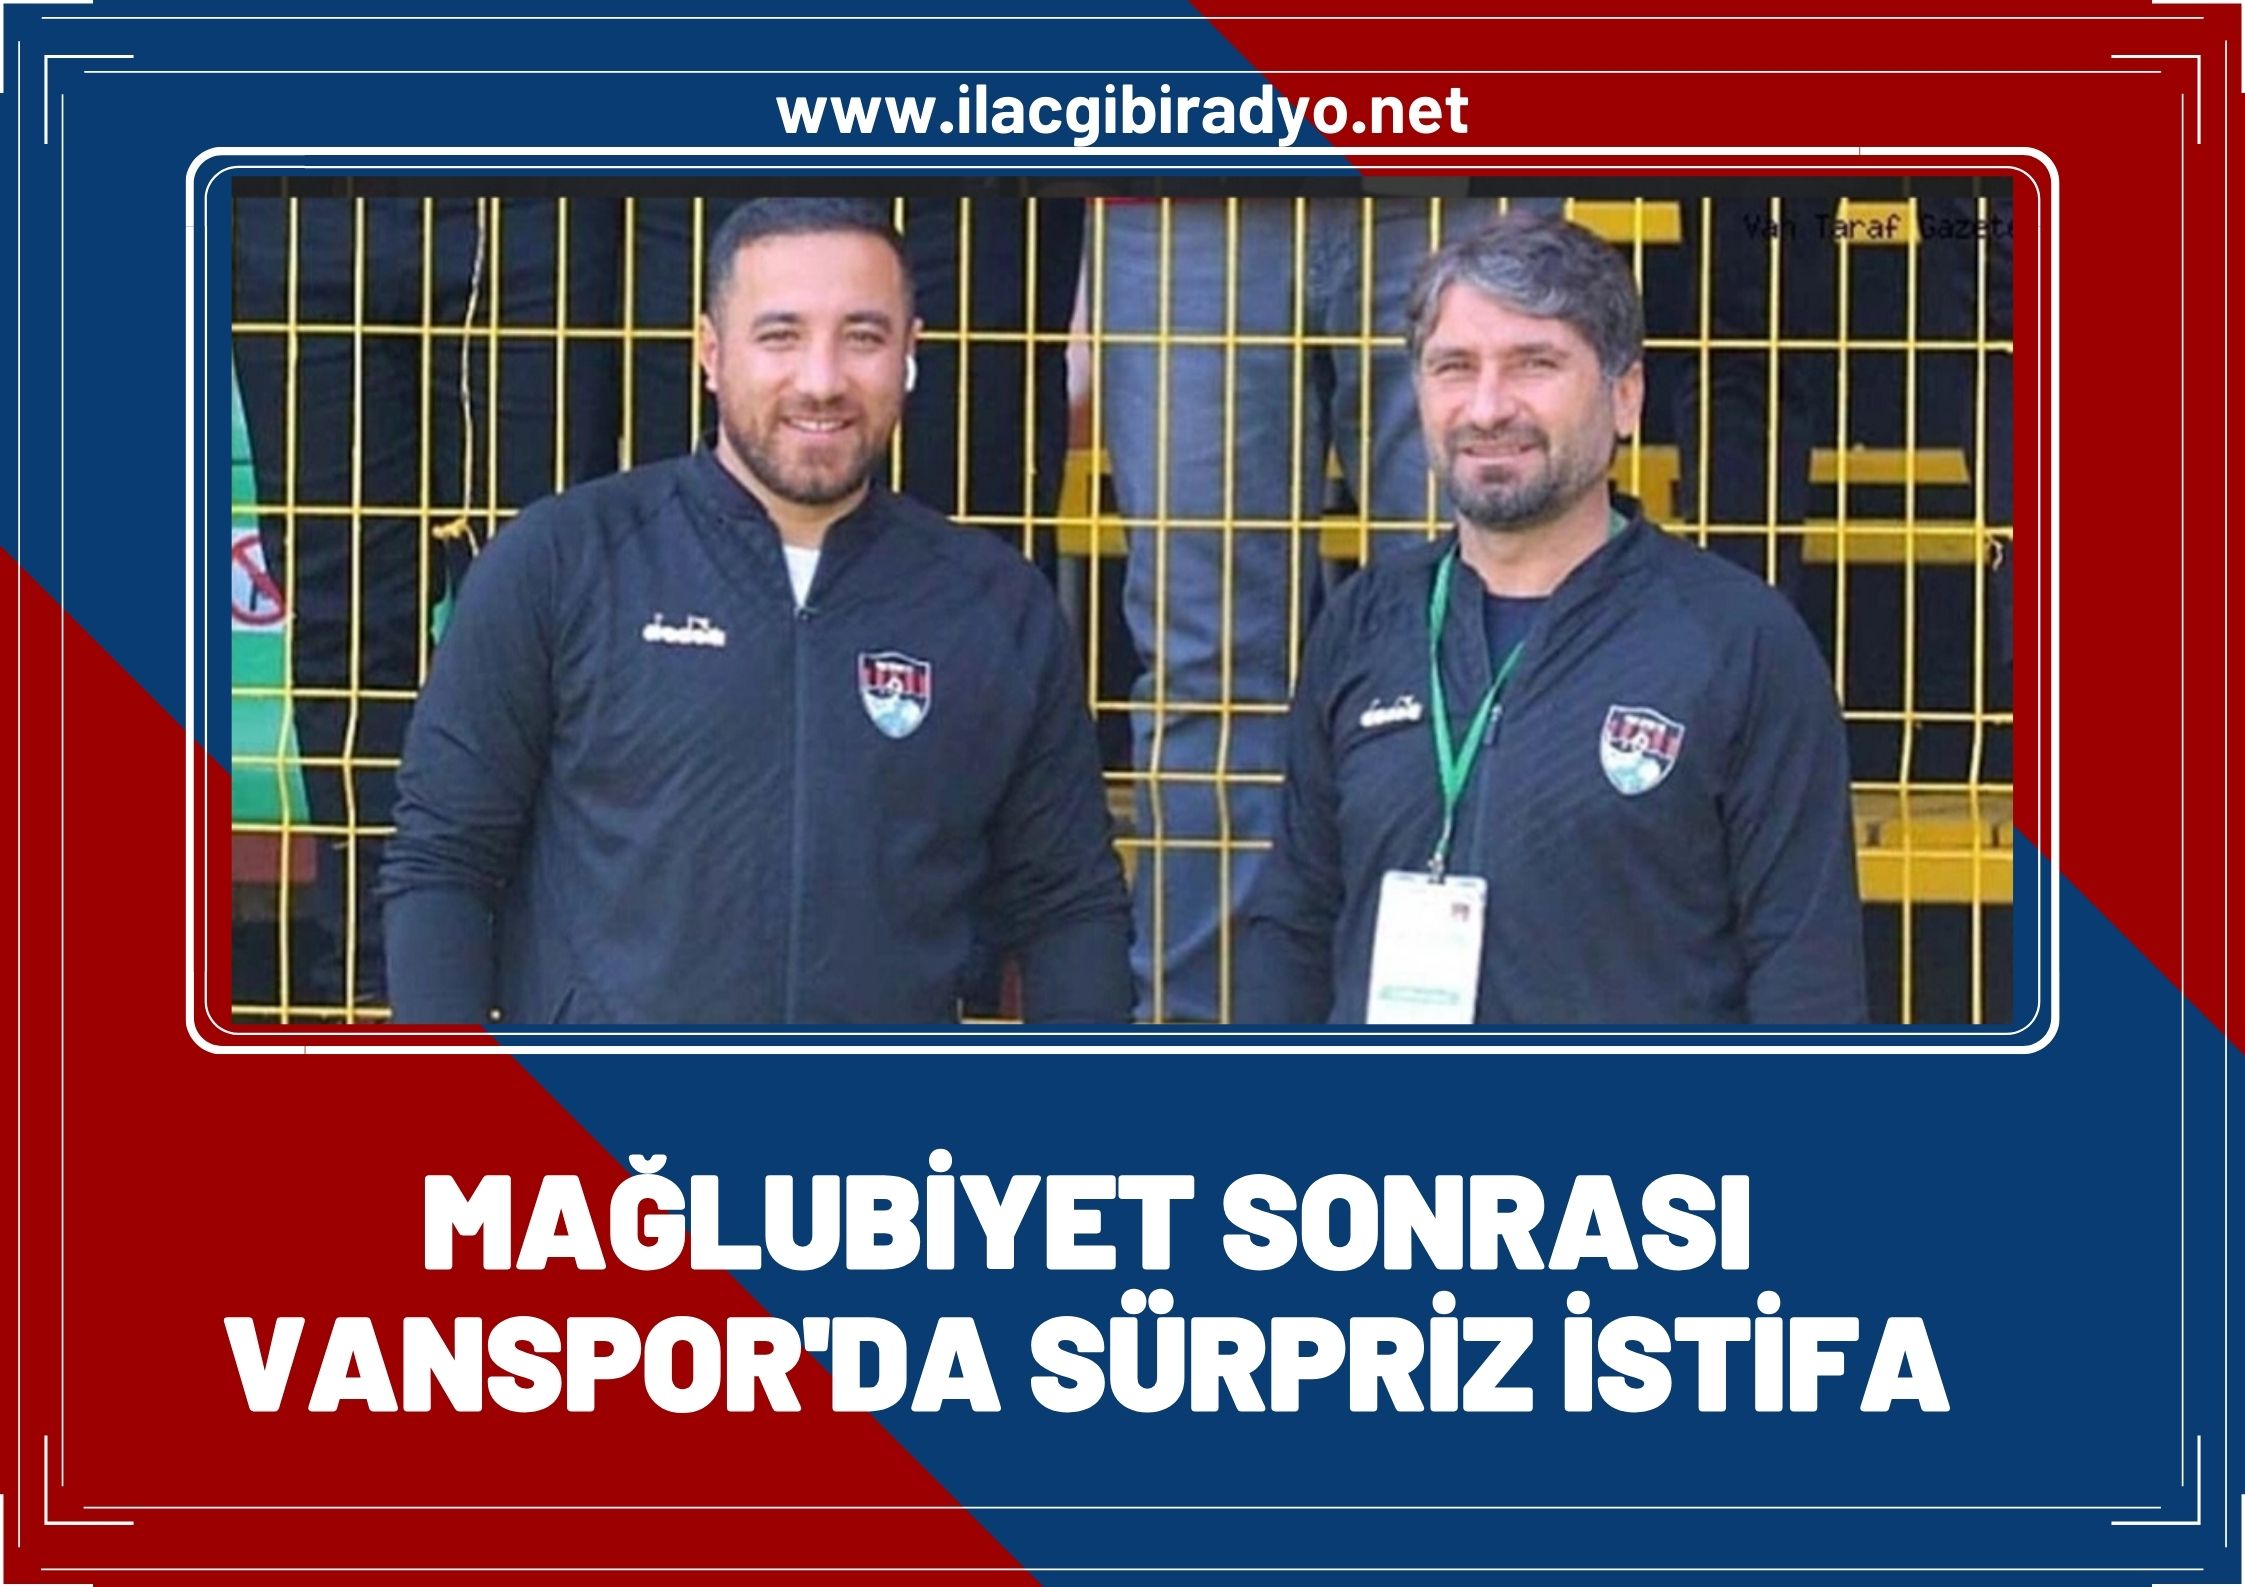 Mağlubiyet sonrası Vanspor'da sürpriz istifa